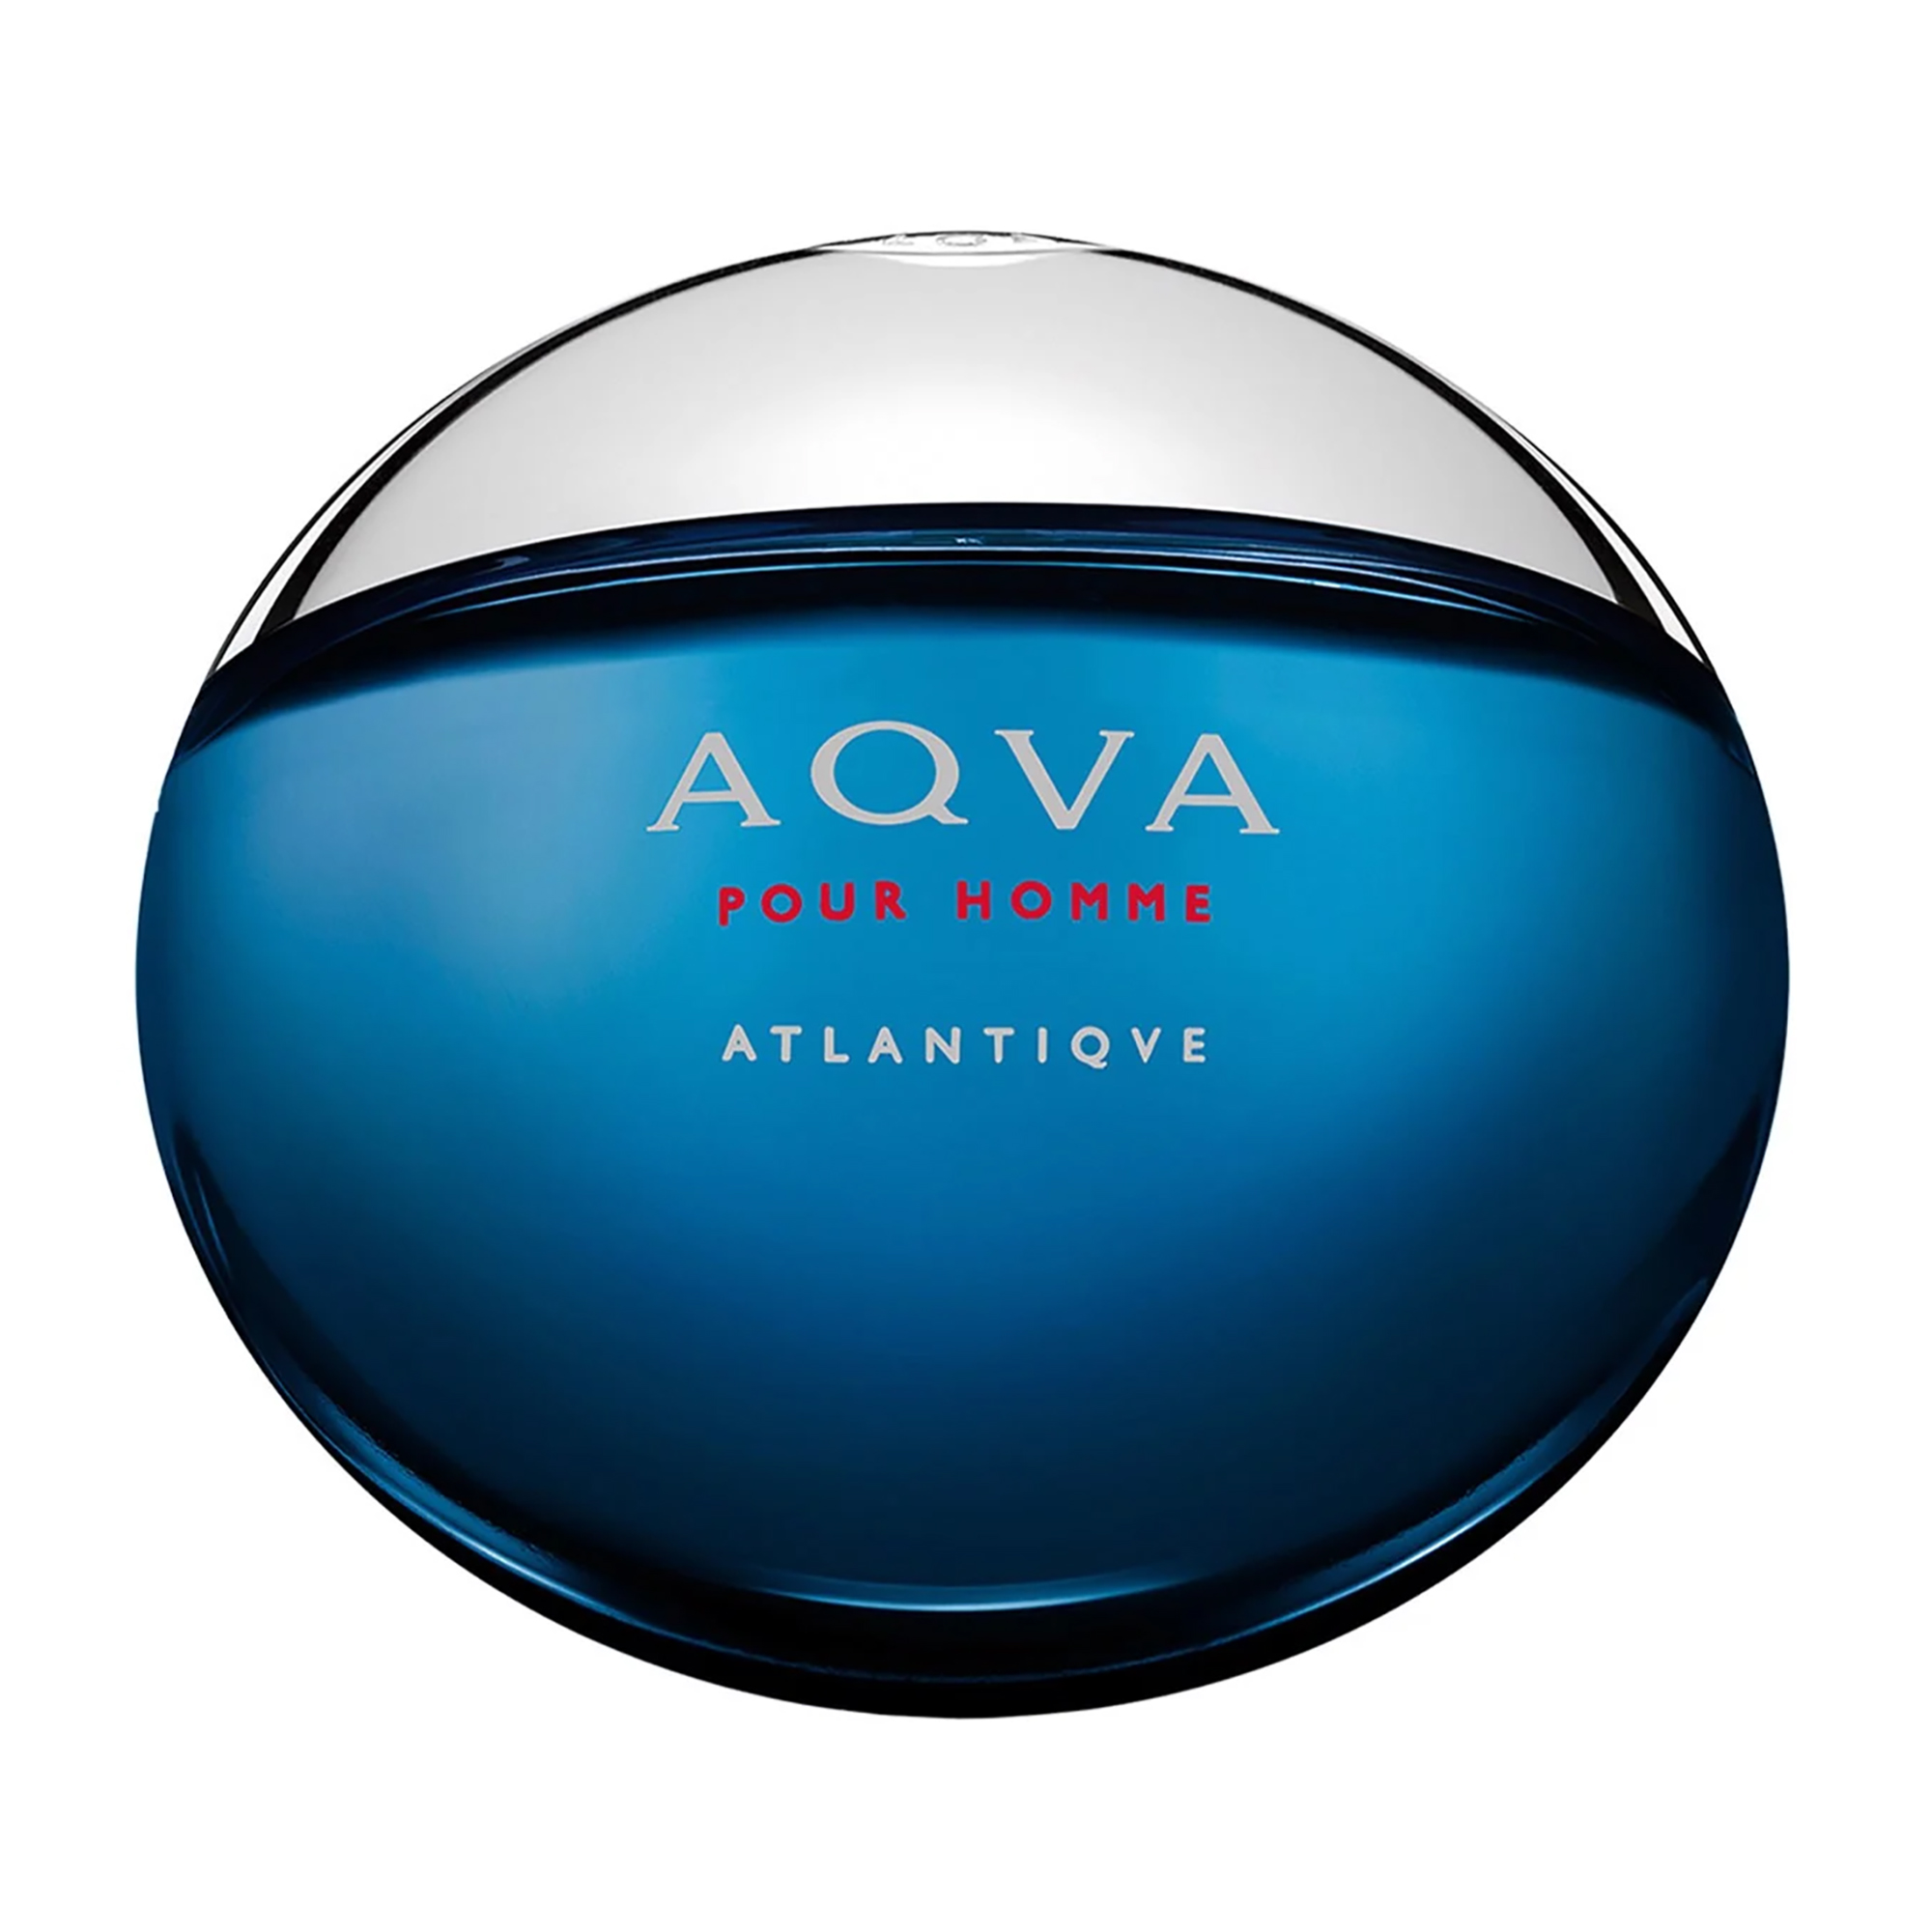 Bvlgari Aqua Atlantique - Nước hoa chính hãng 100% nhập khẩu Pháp, Mỹ…Giá tốt tại Perfume168